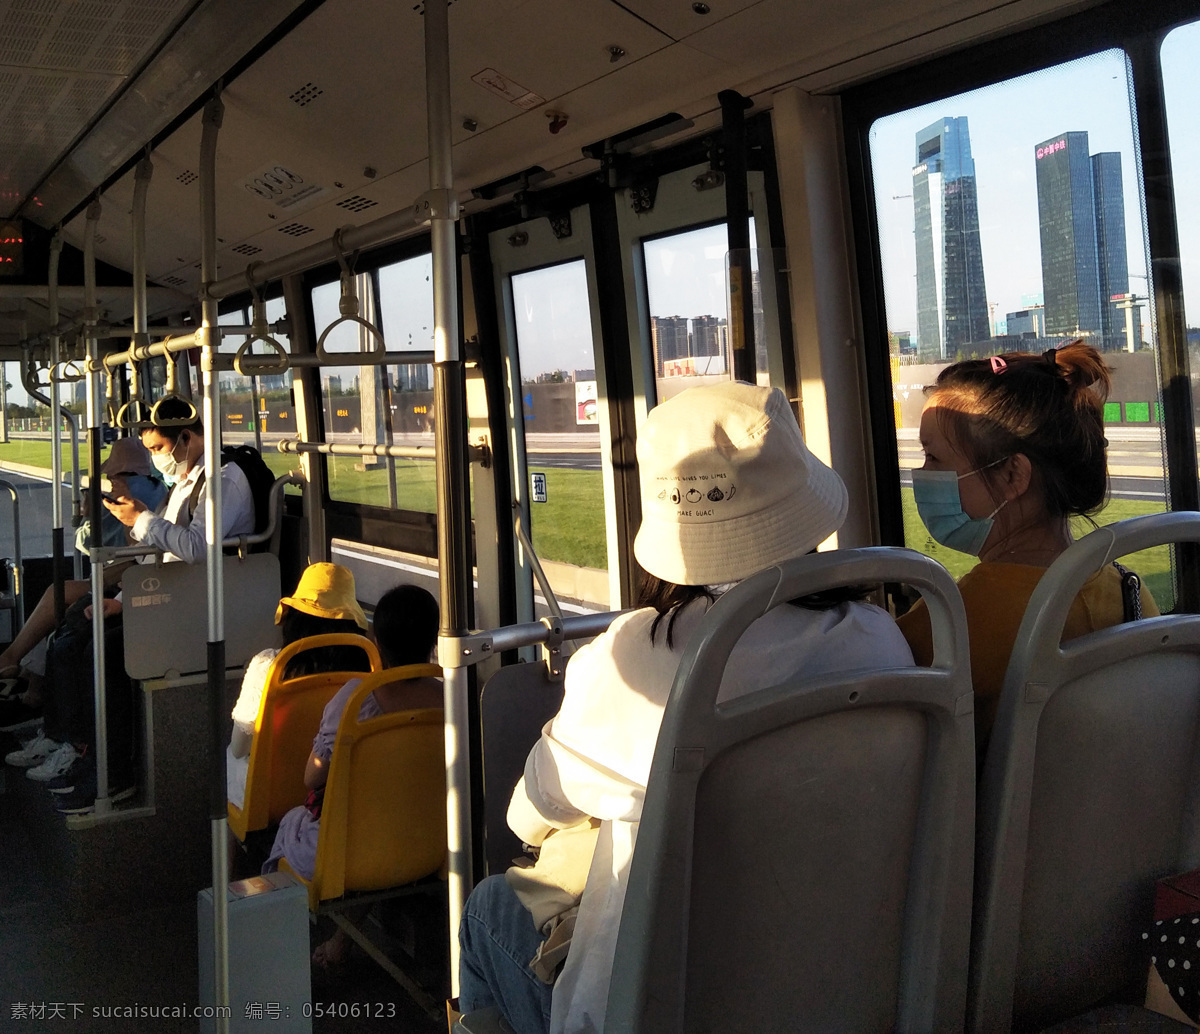 公交车 阳光 透光 乘客 座位 座椅 戴口罩 生活百科 生活素材